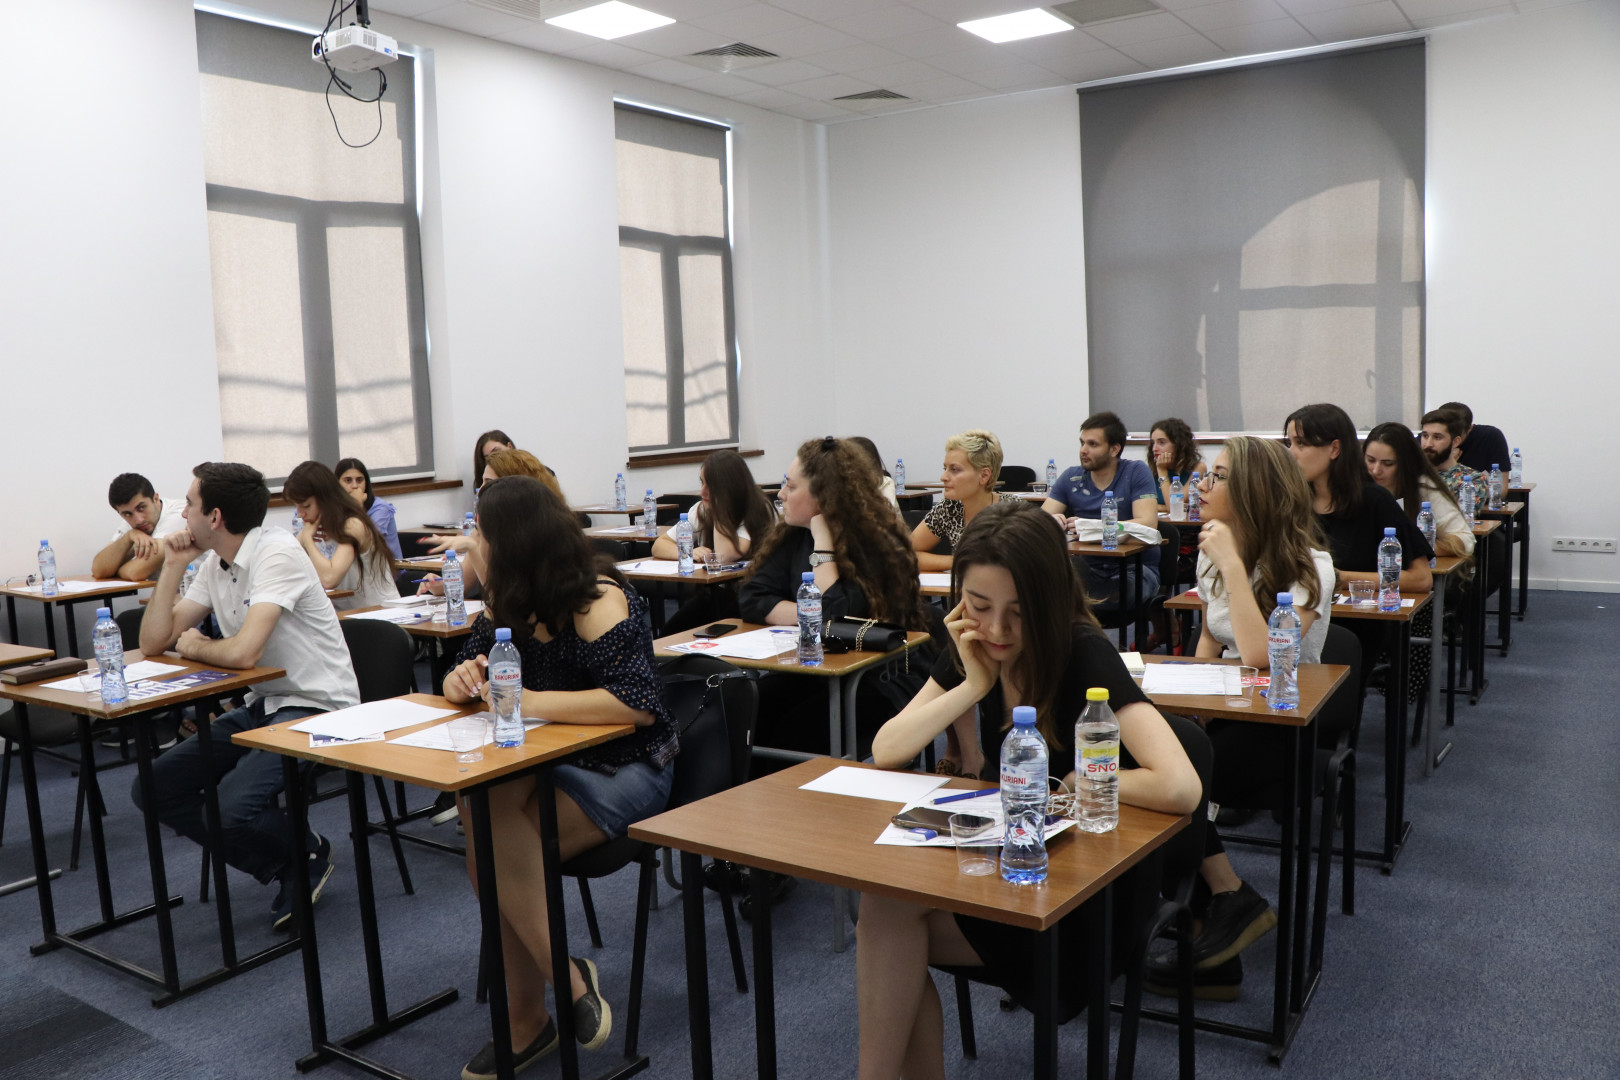 ჟან მონეს კათედრის საზაფხულო სკოლა - „ევროკავშირი: მიმდინარე საკითხები და პოლიტიკა“